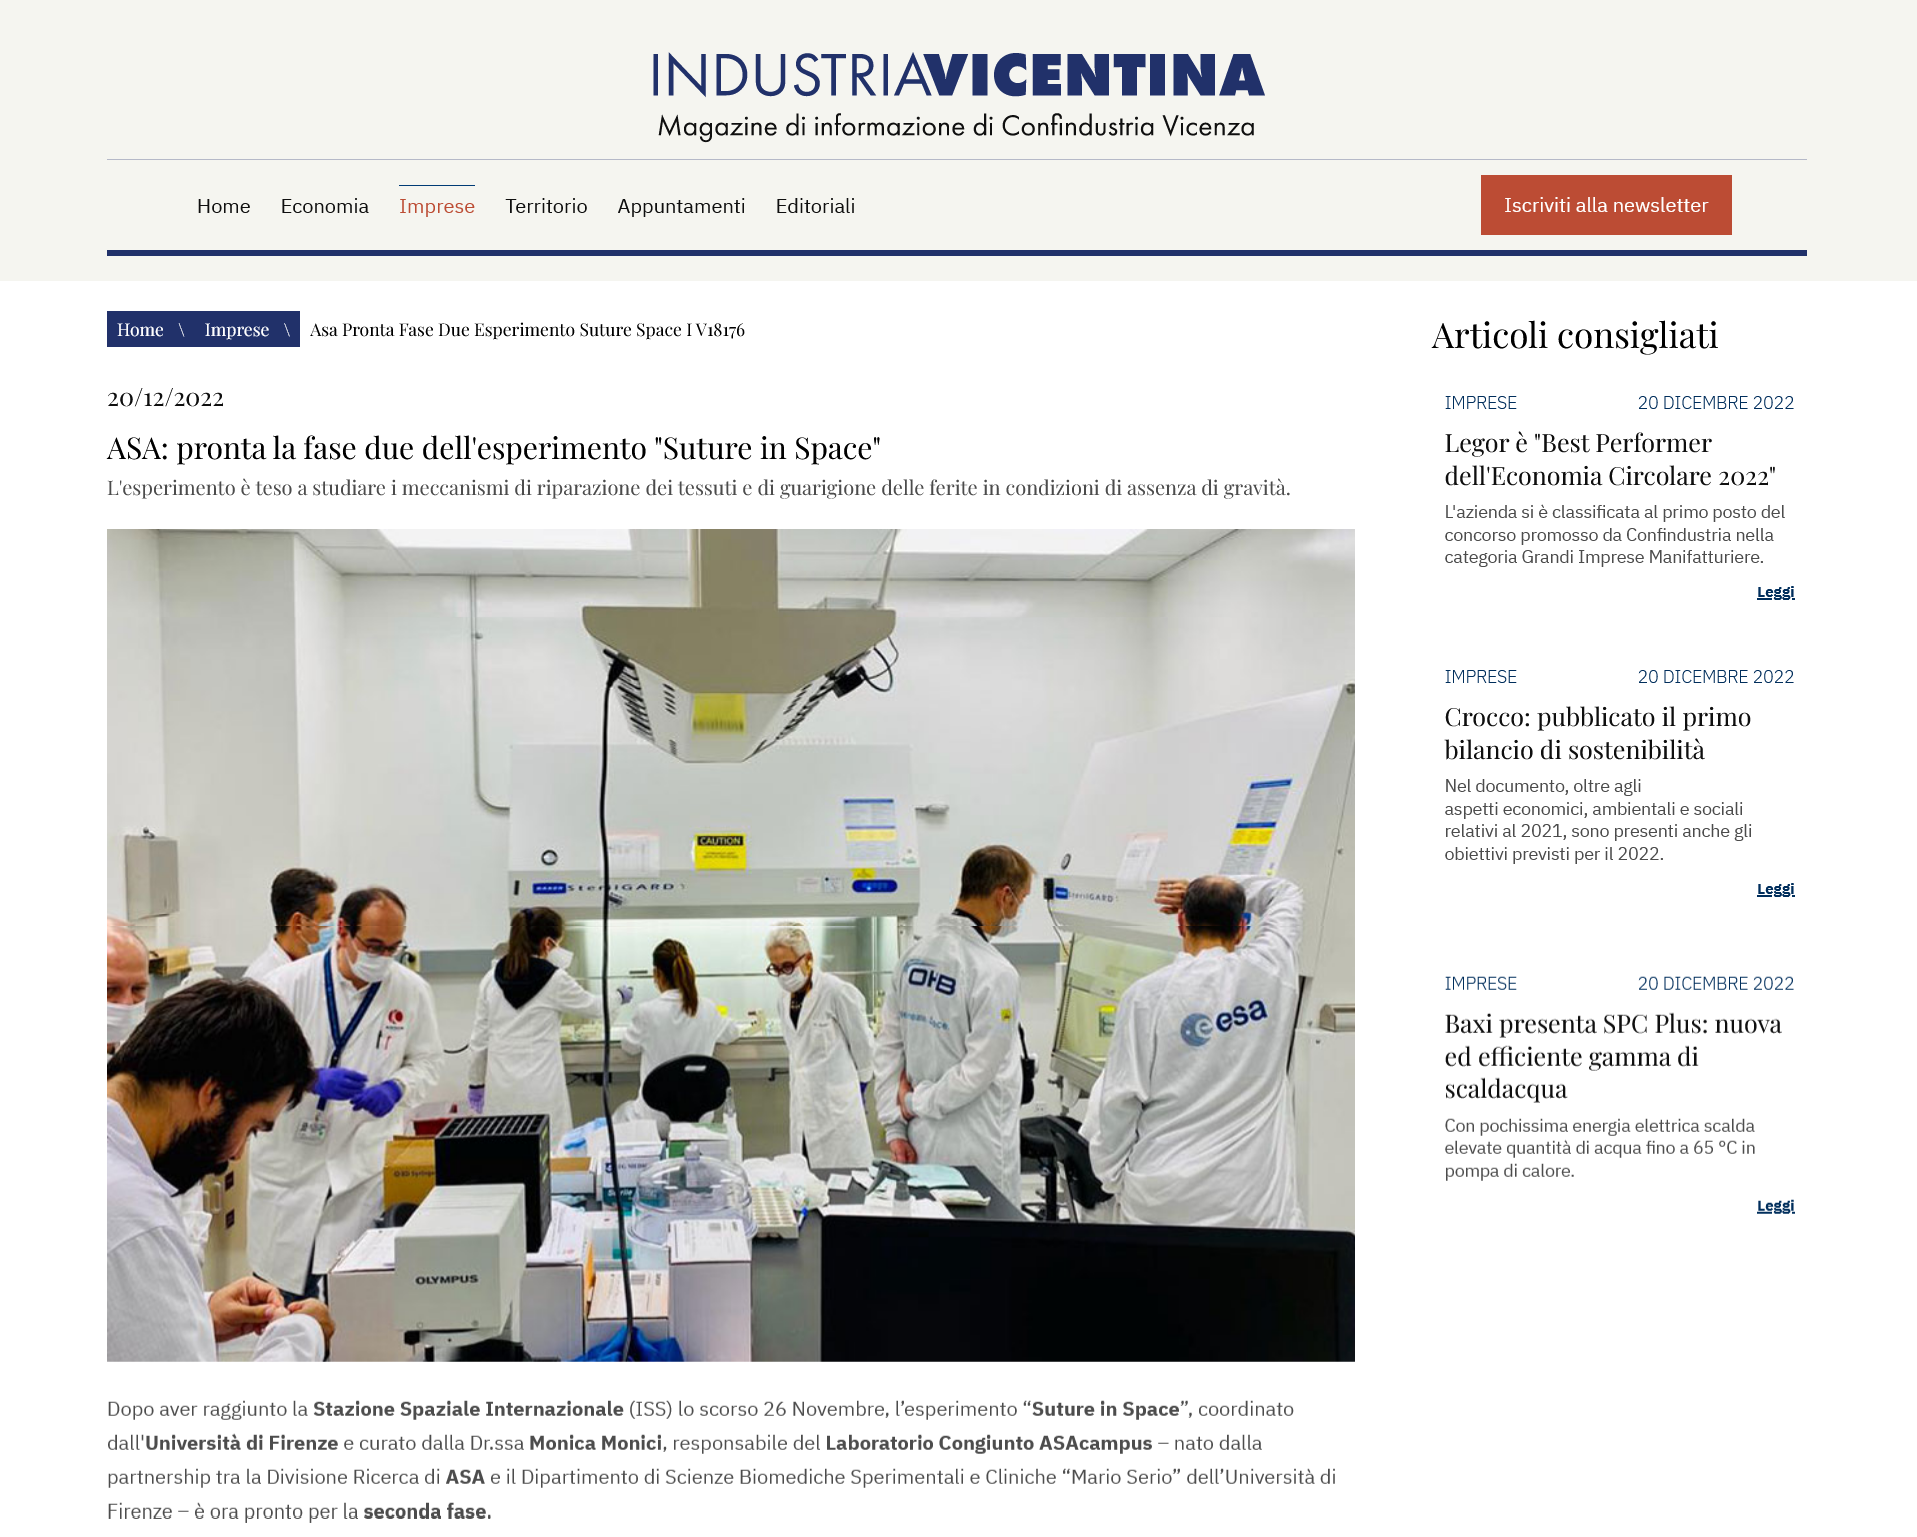 Industria Vicentina - ASA: pronta la fase due dell'esperimento "Suture in Space"